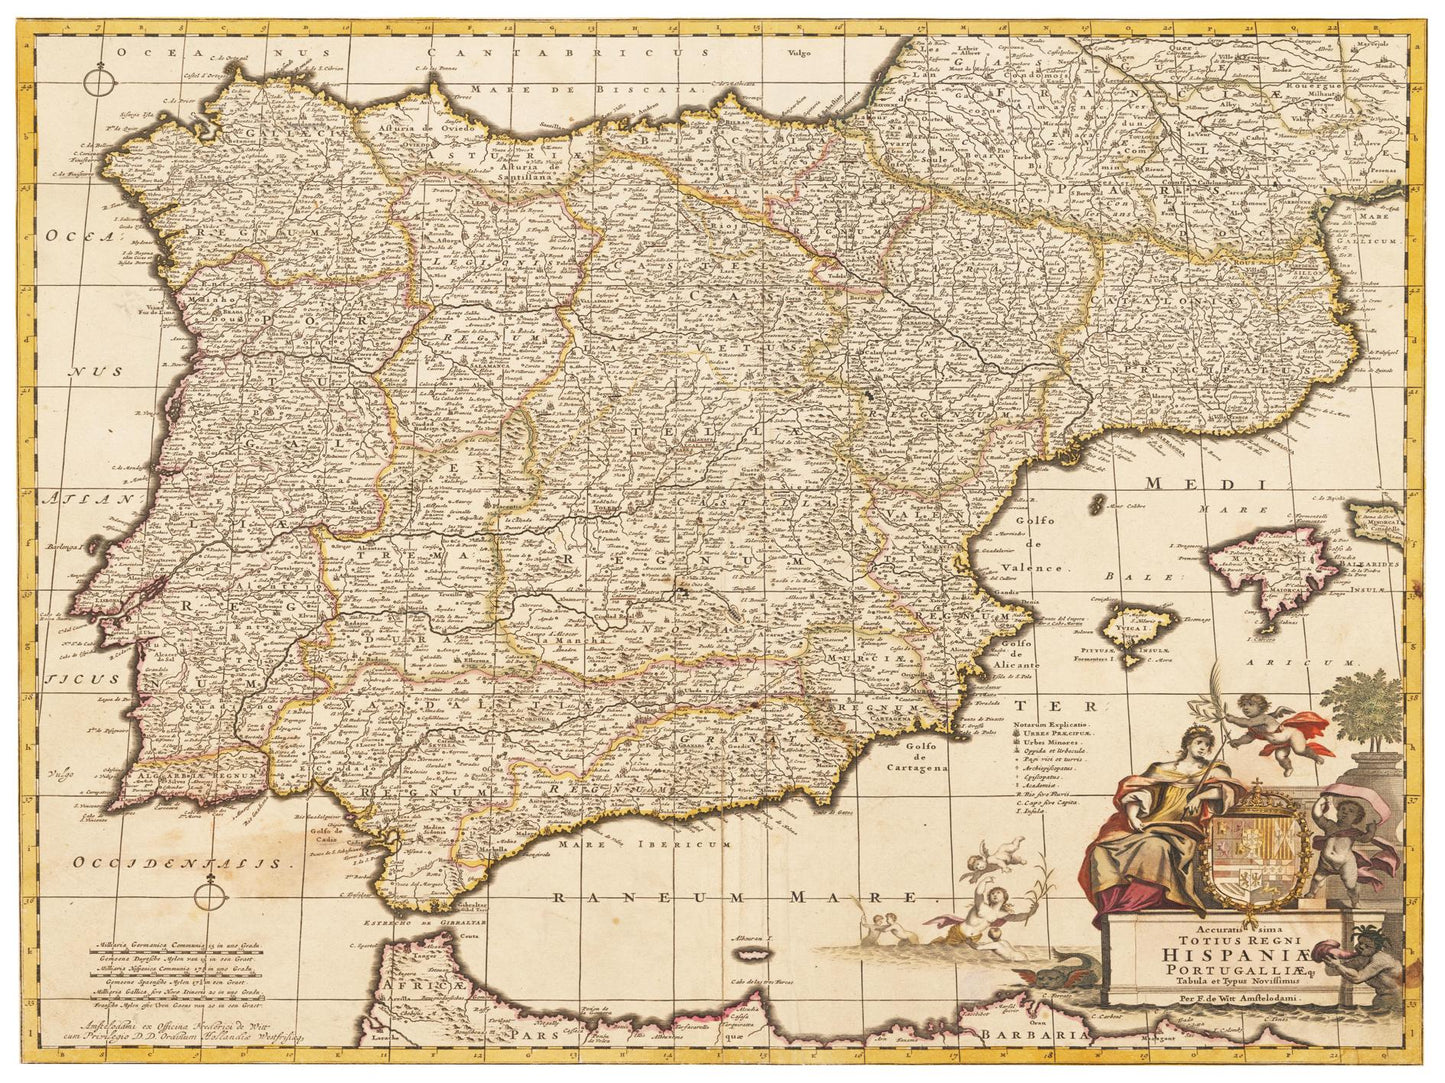 Historische Landkarte Spanien um 1698